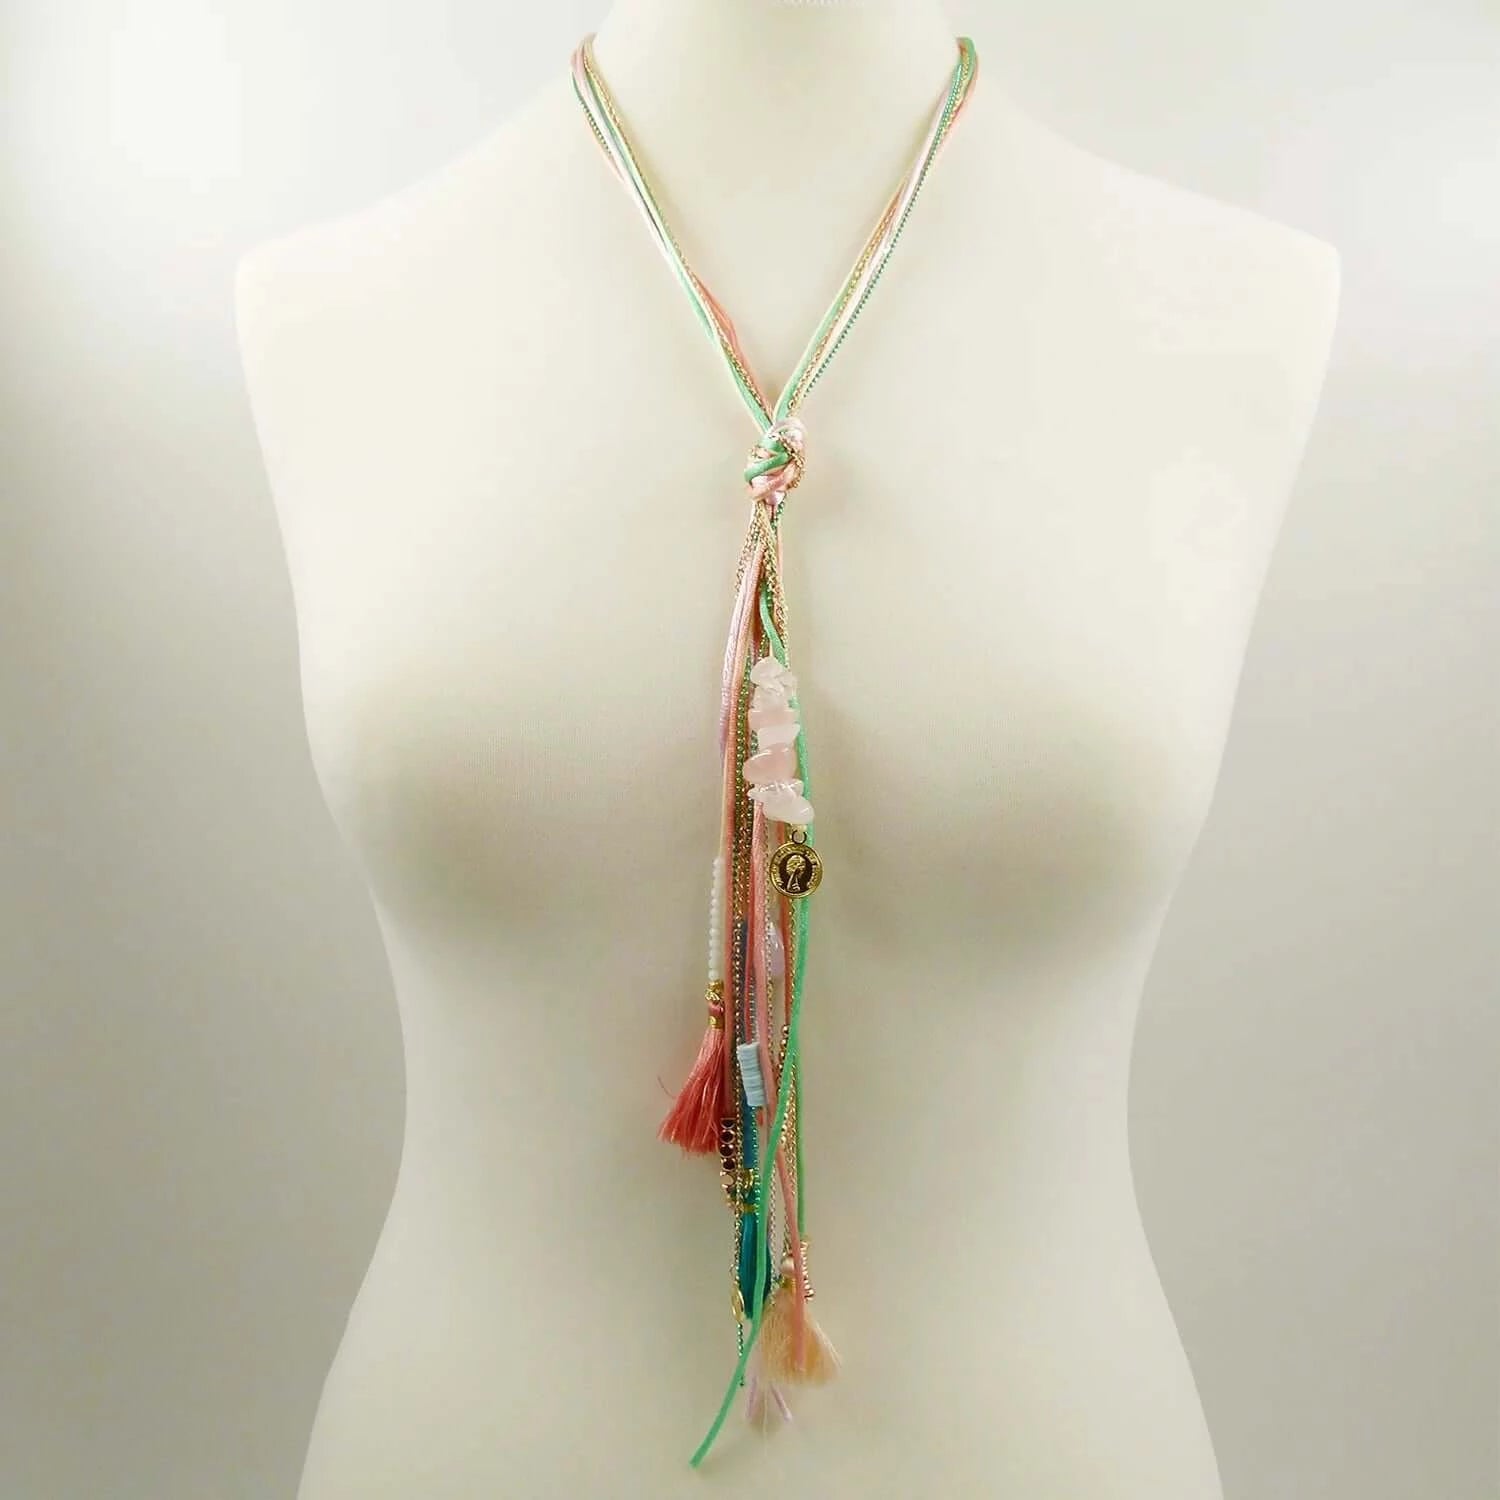 Multistrand Y-shape boho necklace